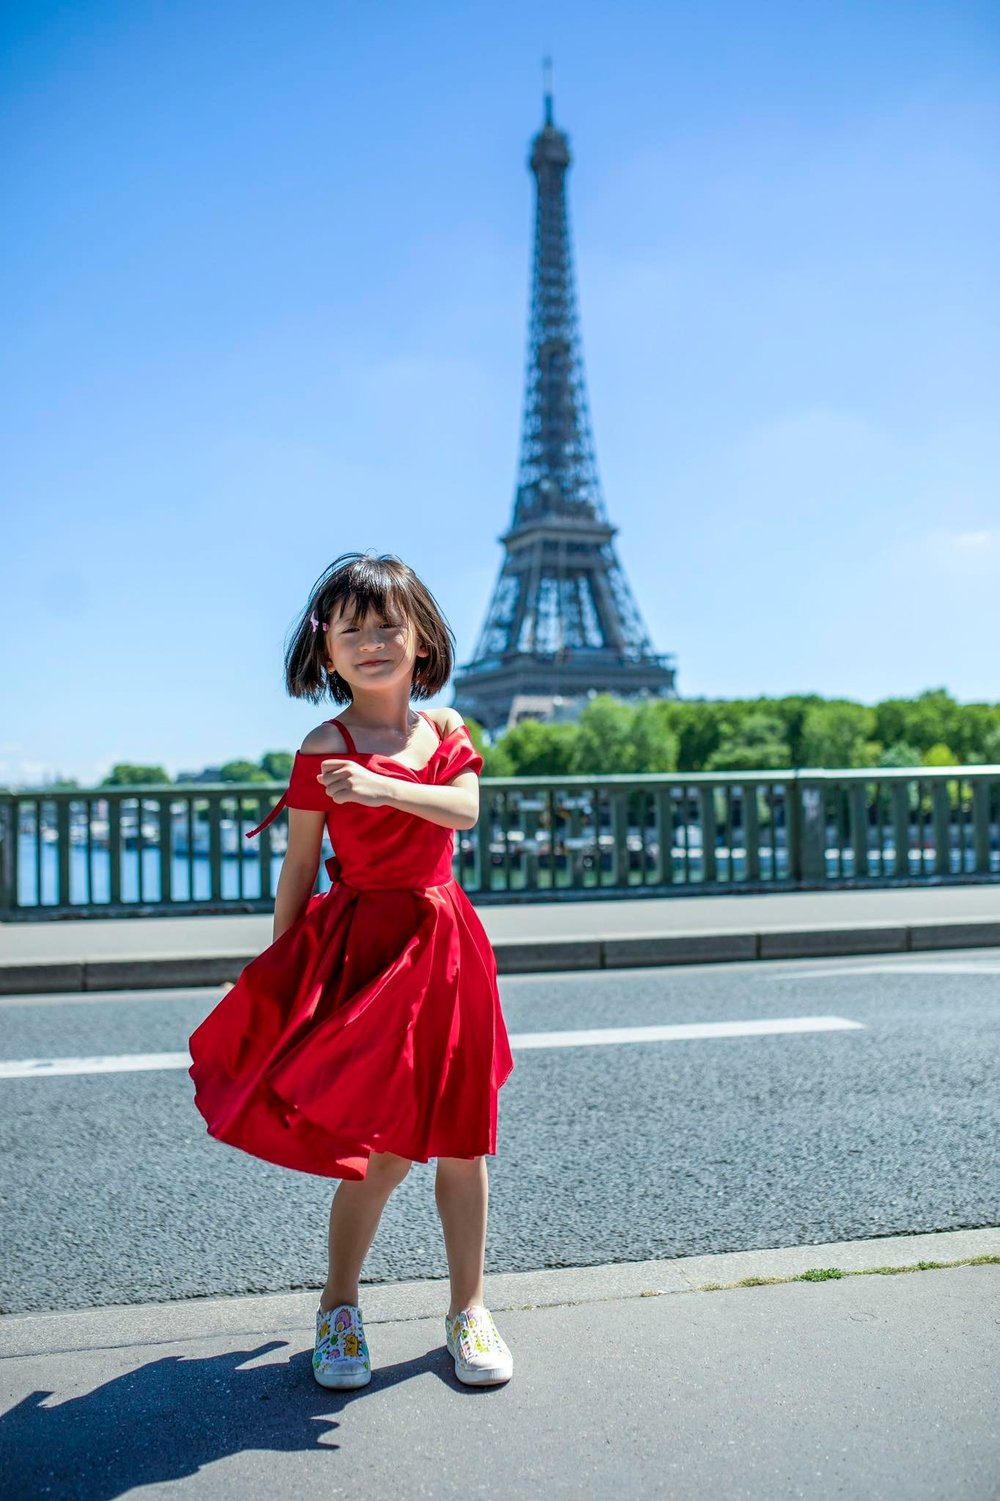  
Nhóc tì diện váy đỏ nổi bật khi dạo chơi trước tháp Eiffel. - Tin sao Viet - Tin tuc sao Viet - Scandal sao Viet - Tin tuc cua Sao - Tin cua Sao